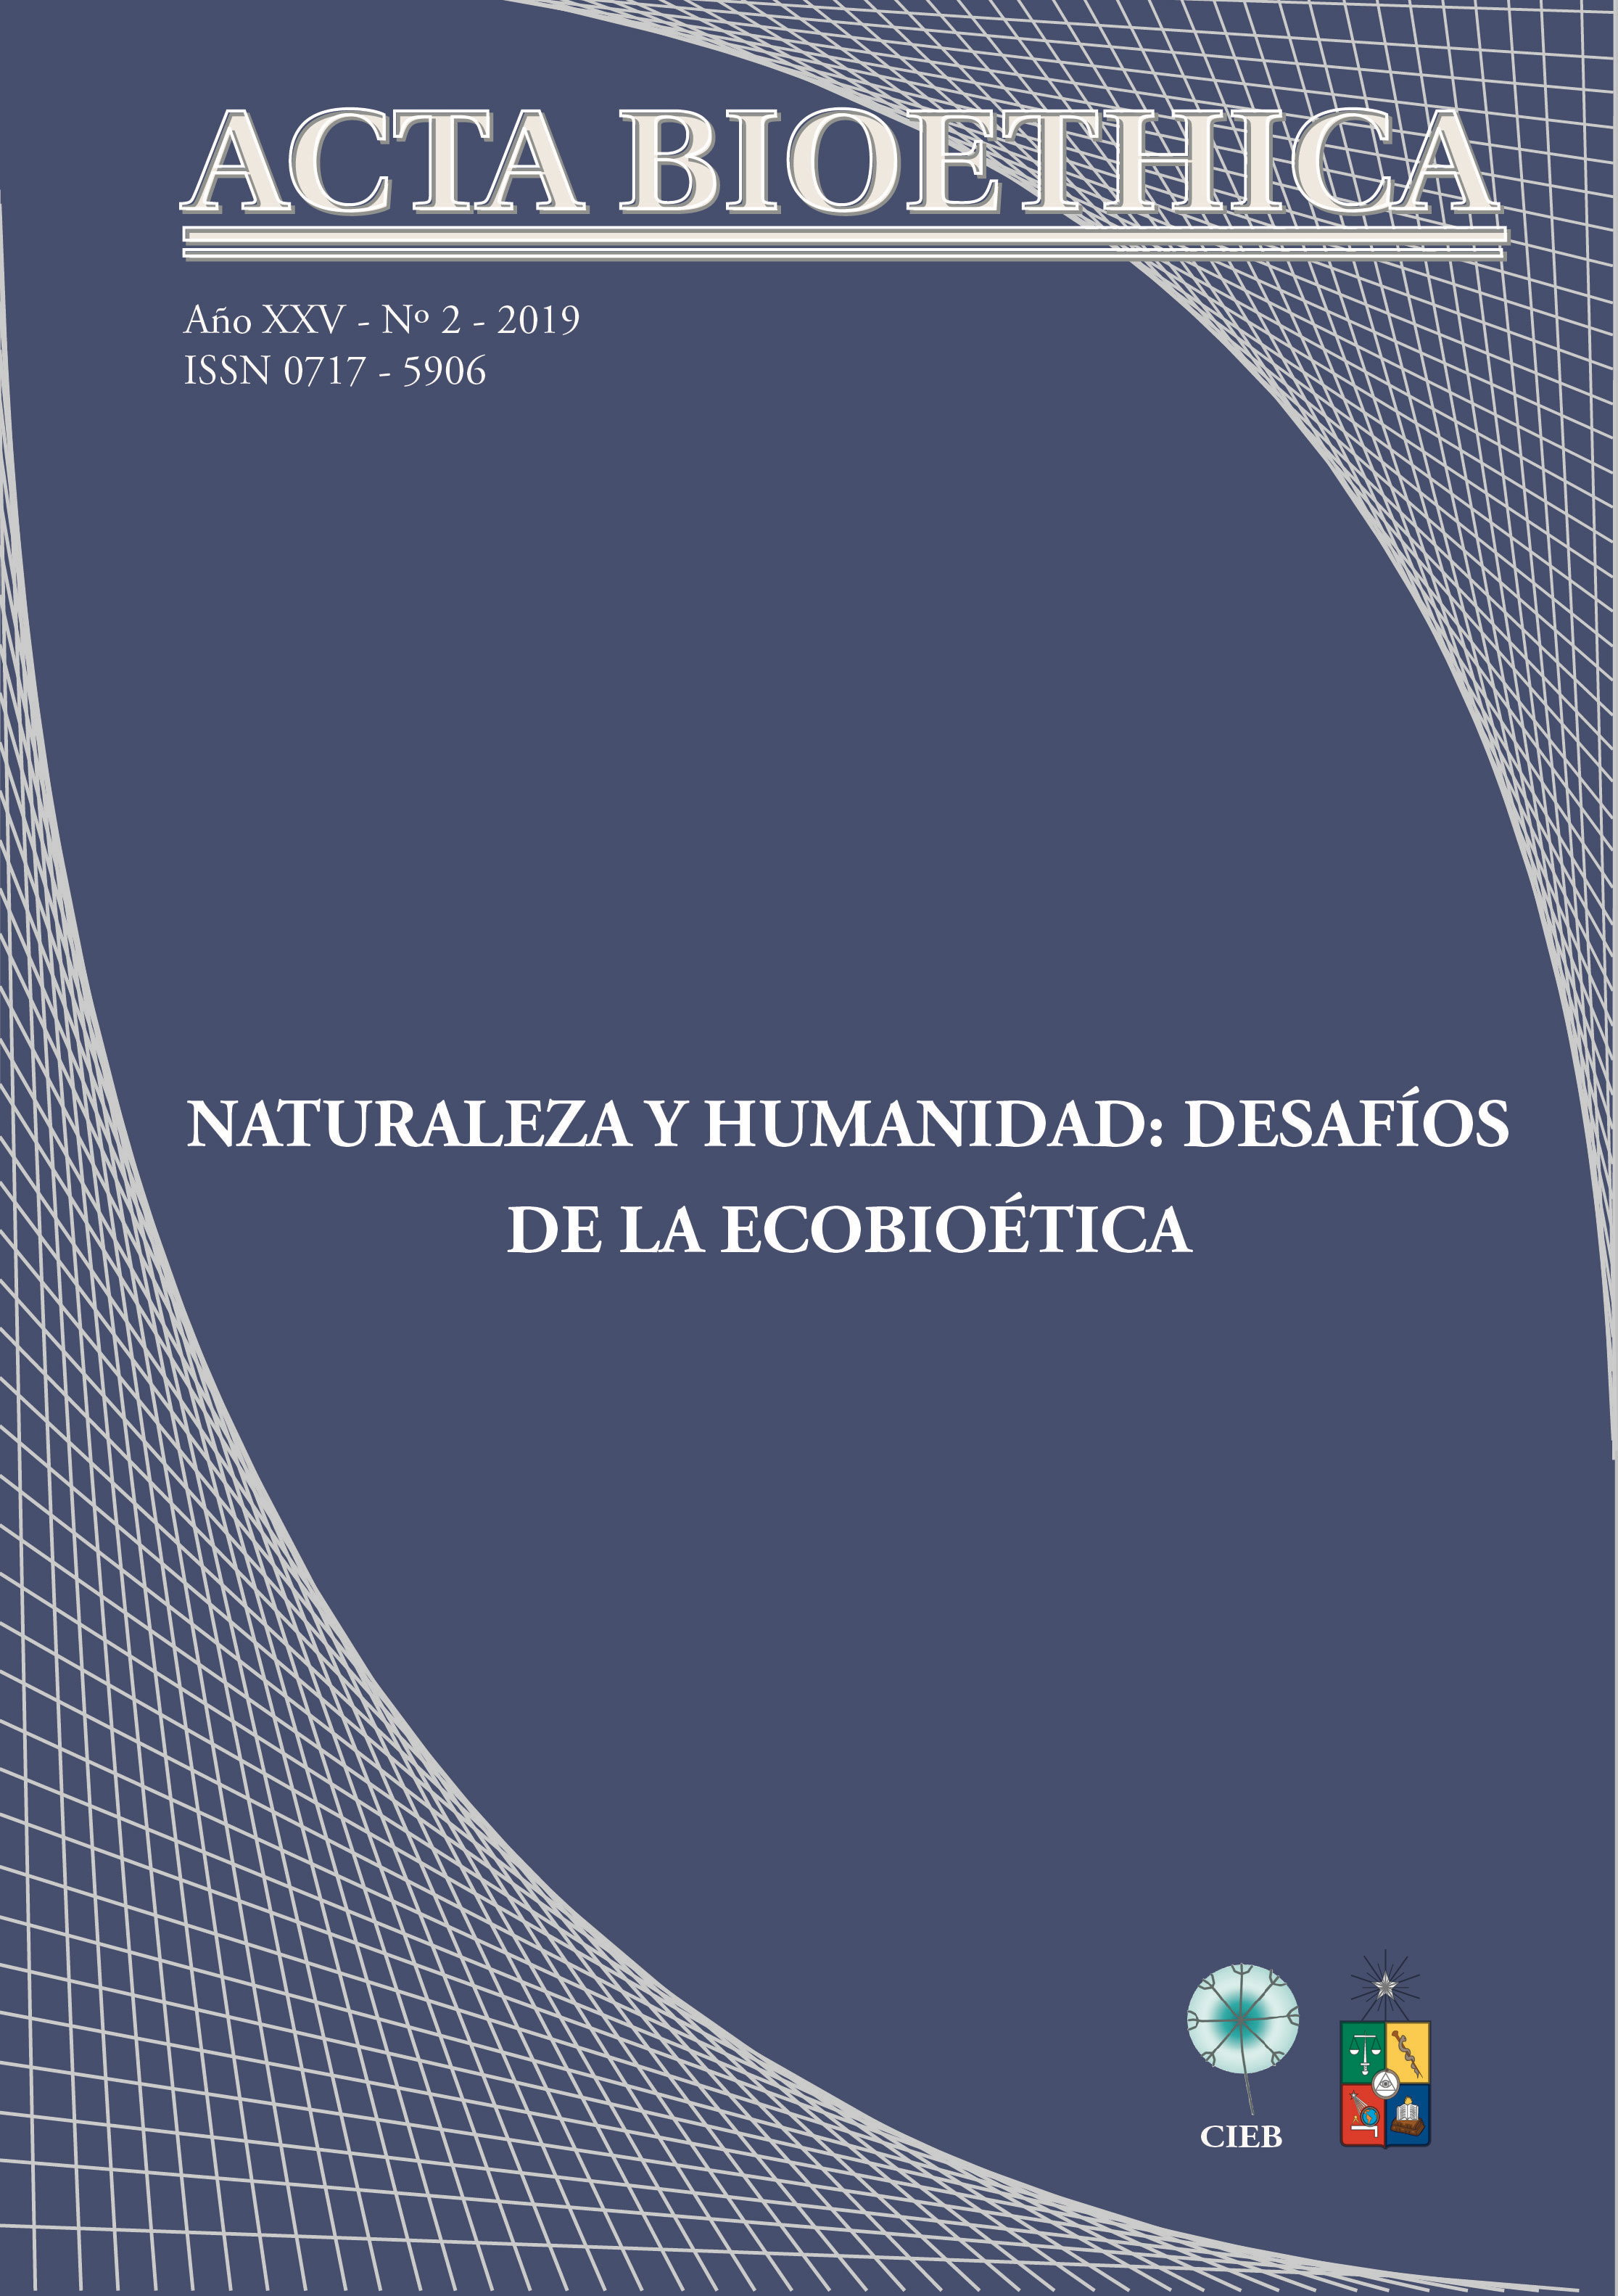 												View Vol. 25 No. 2 (2019): Naturaleza y humanidad: desafíos de la ecobioética
											